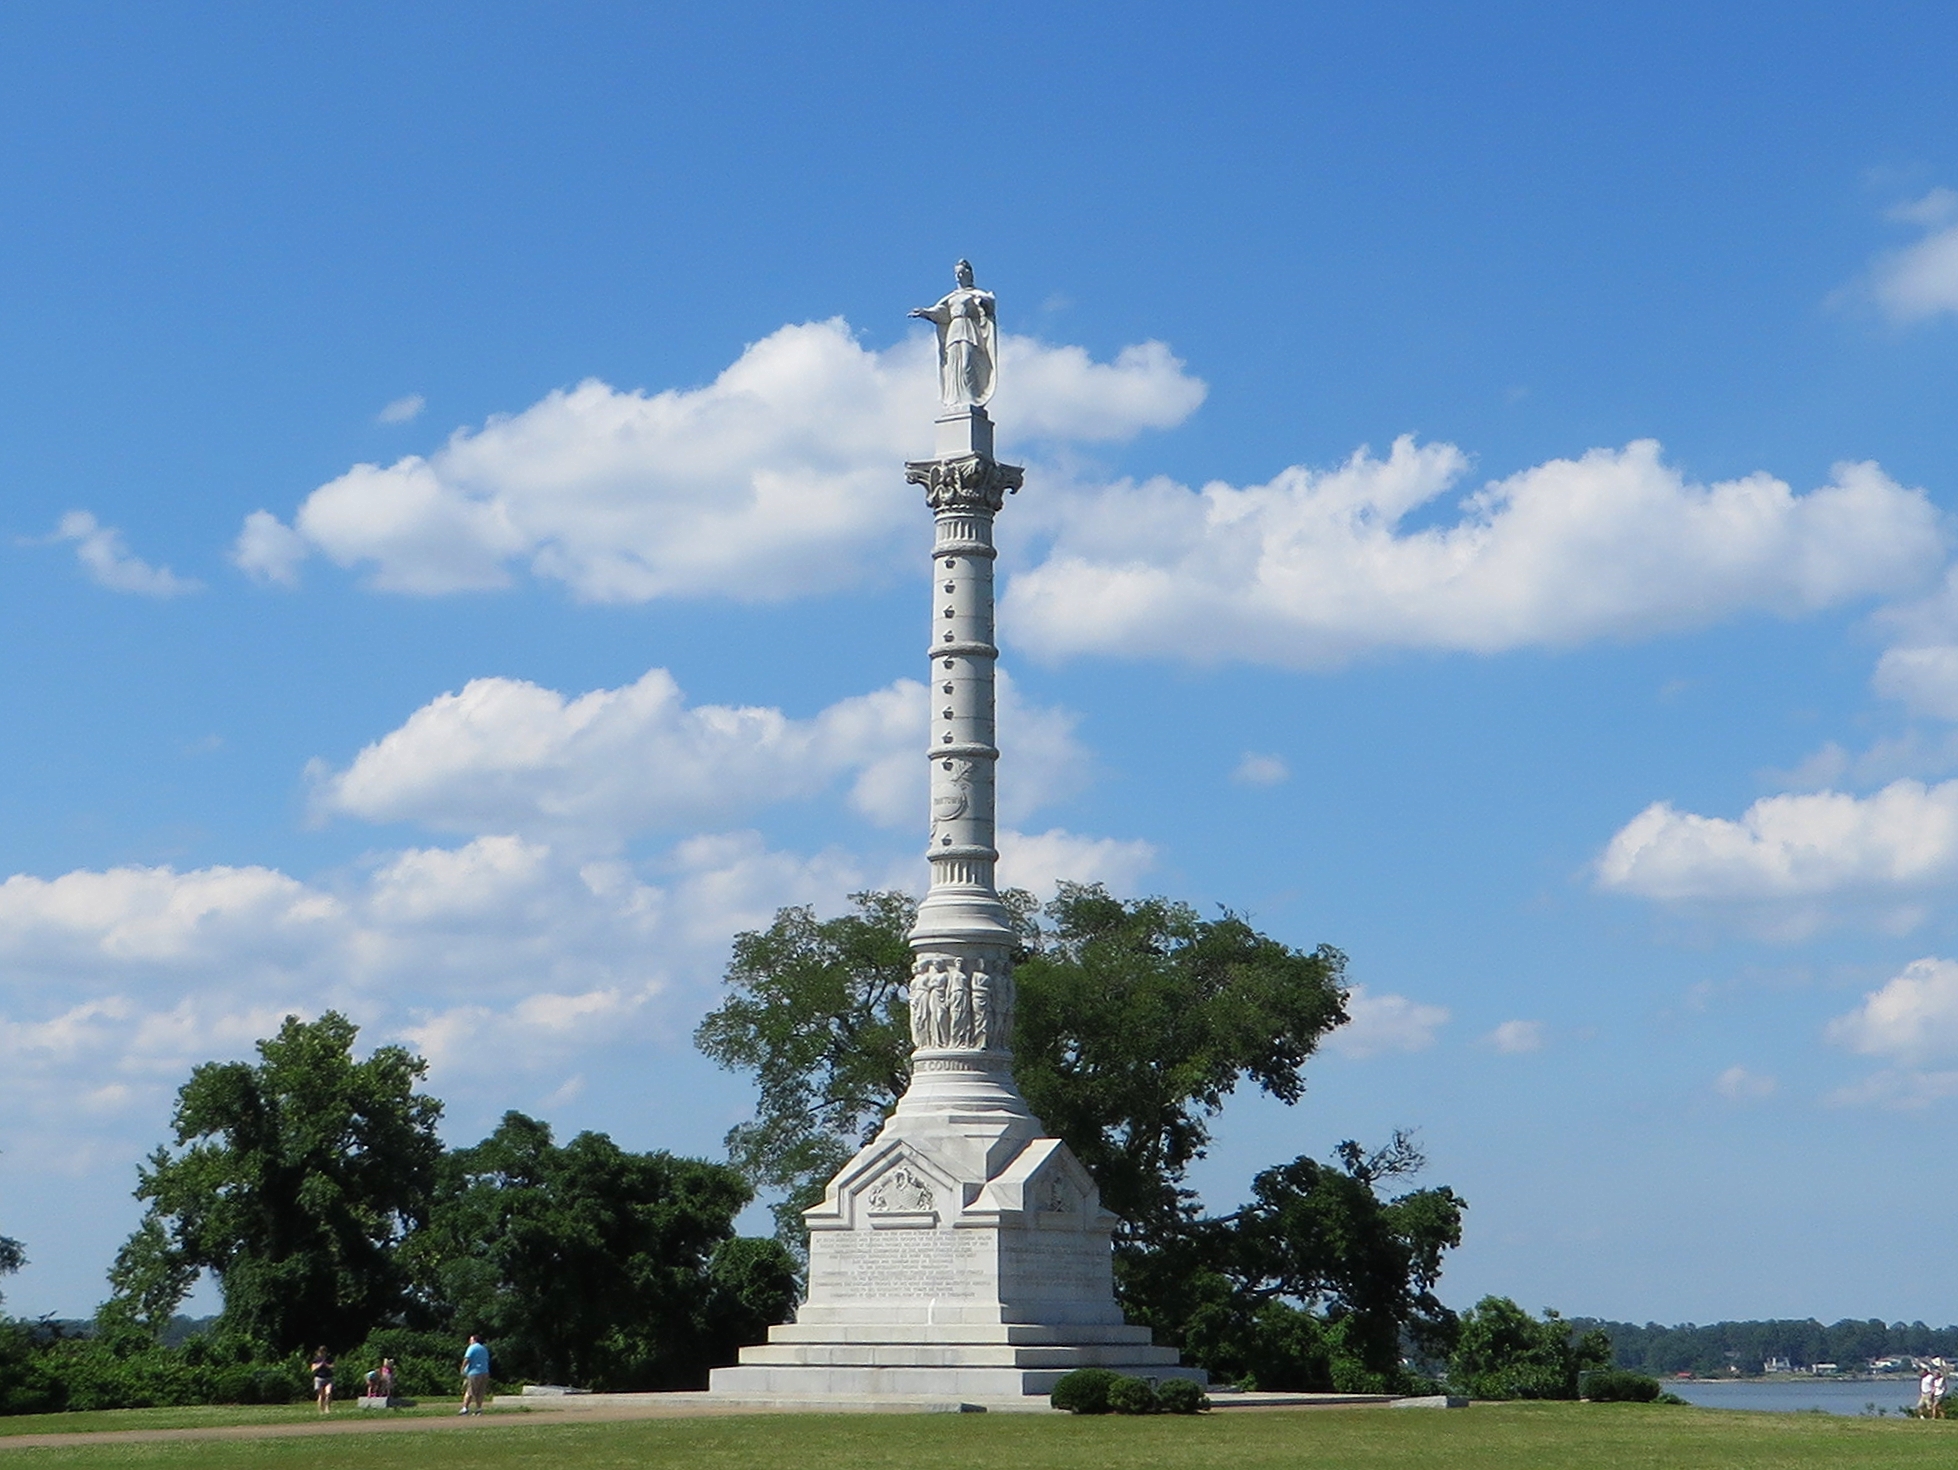 Yorktown Victory Monument overlooking the York River in Yorktown, Virginia. Photo taken by Ken Lund on June 14, 2014.